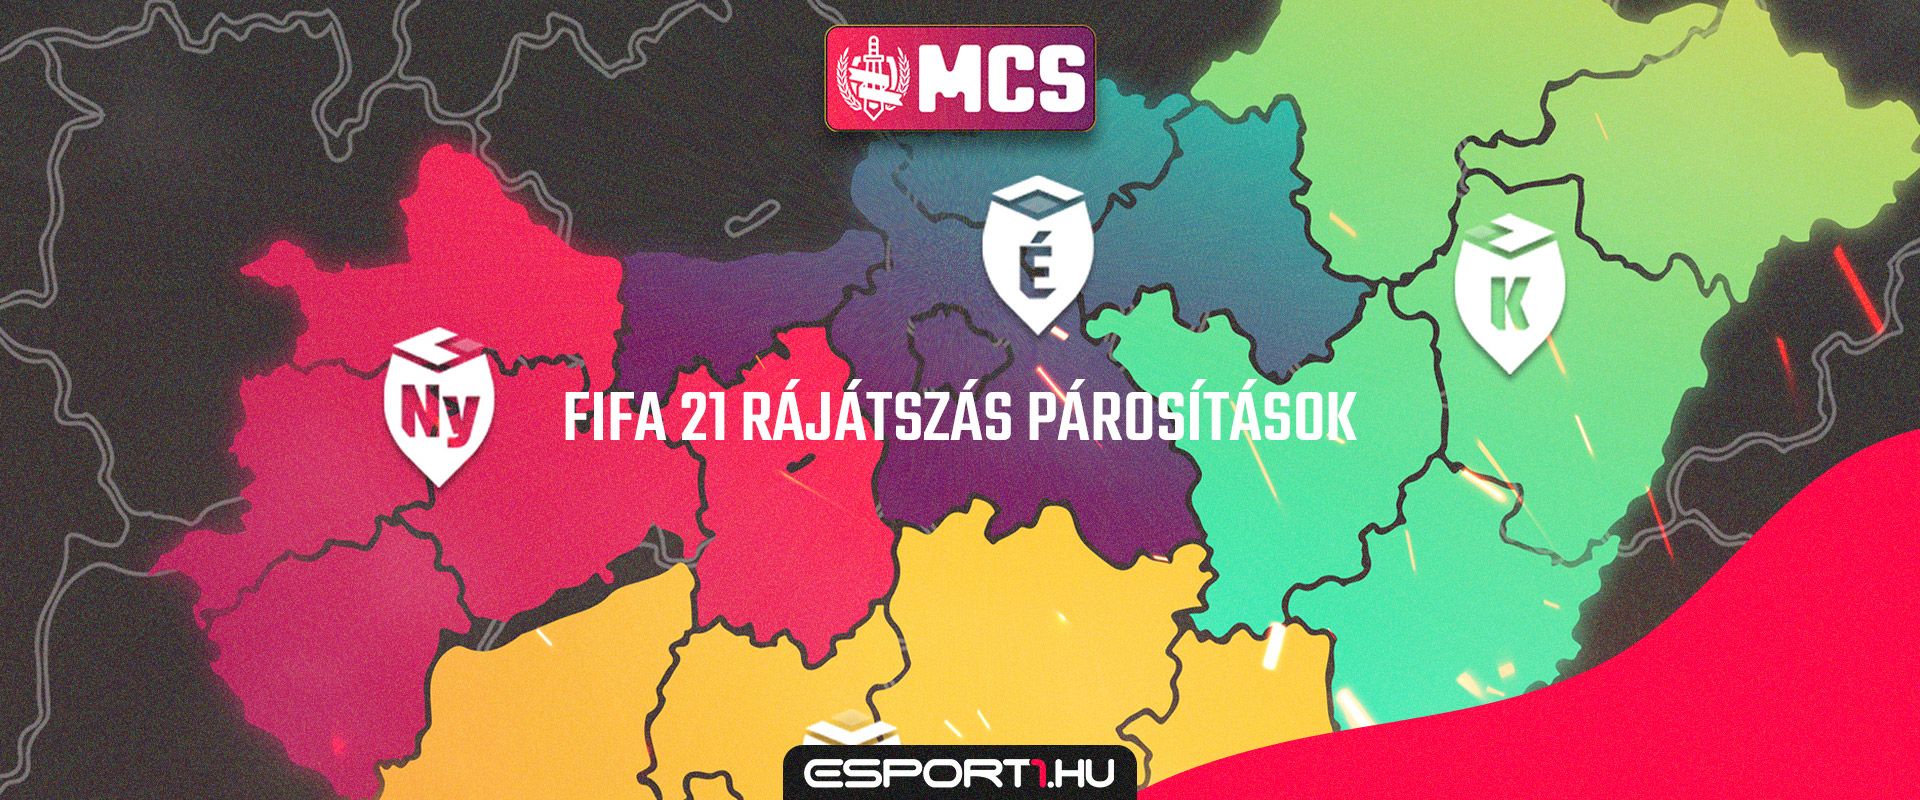 MCS FIFA 21 - Kisorsolták a negyeddöntők párosításait